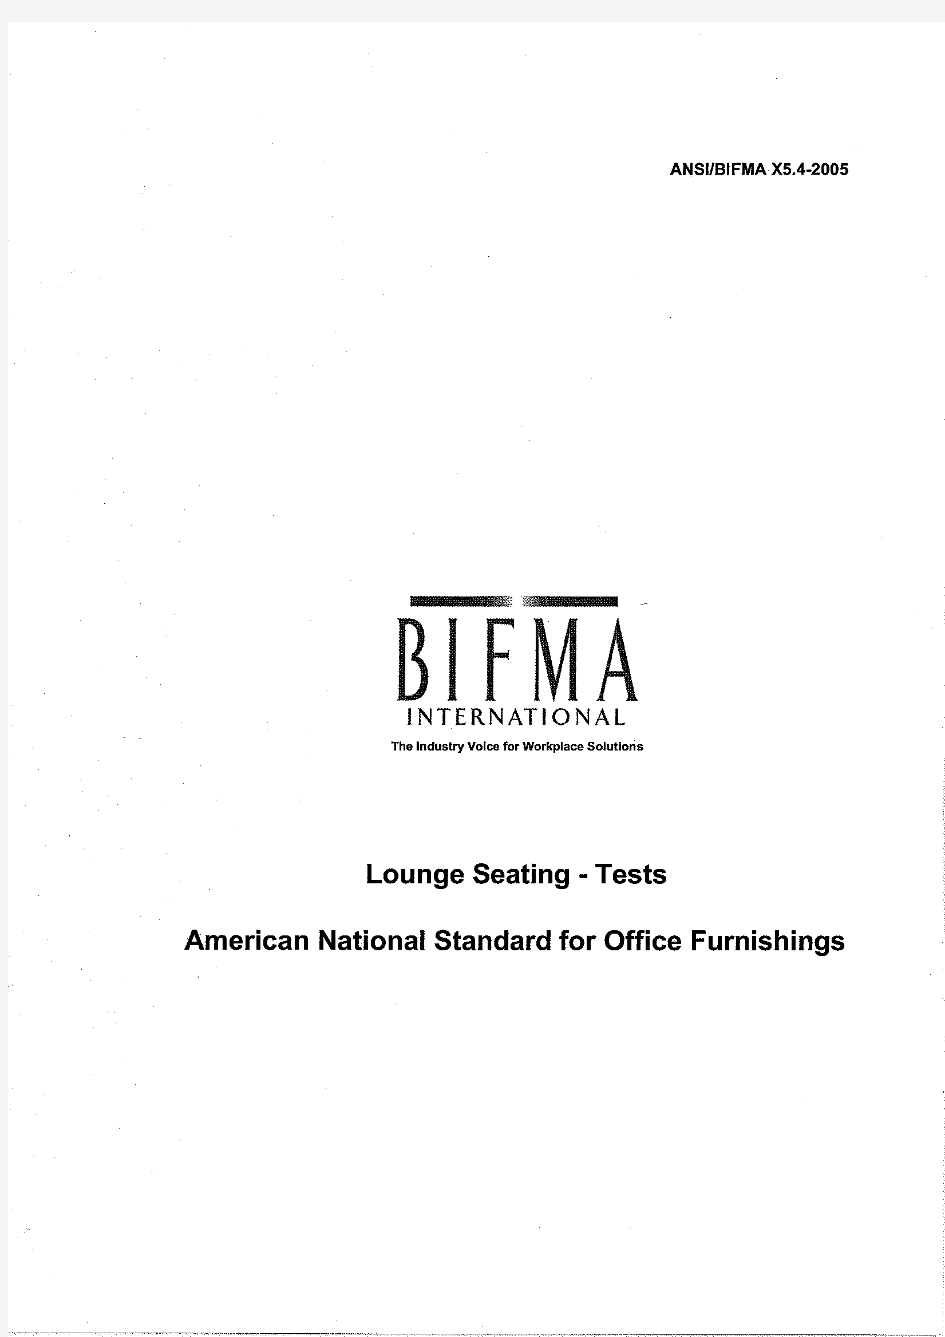 BIFMA X5.4 2005 lounge seating - tests